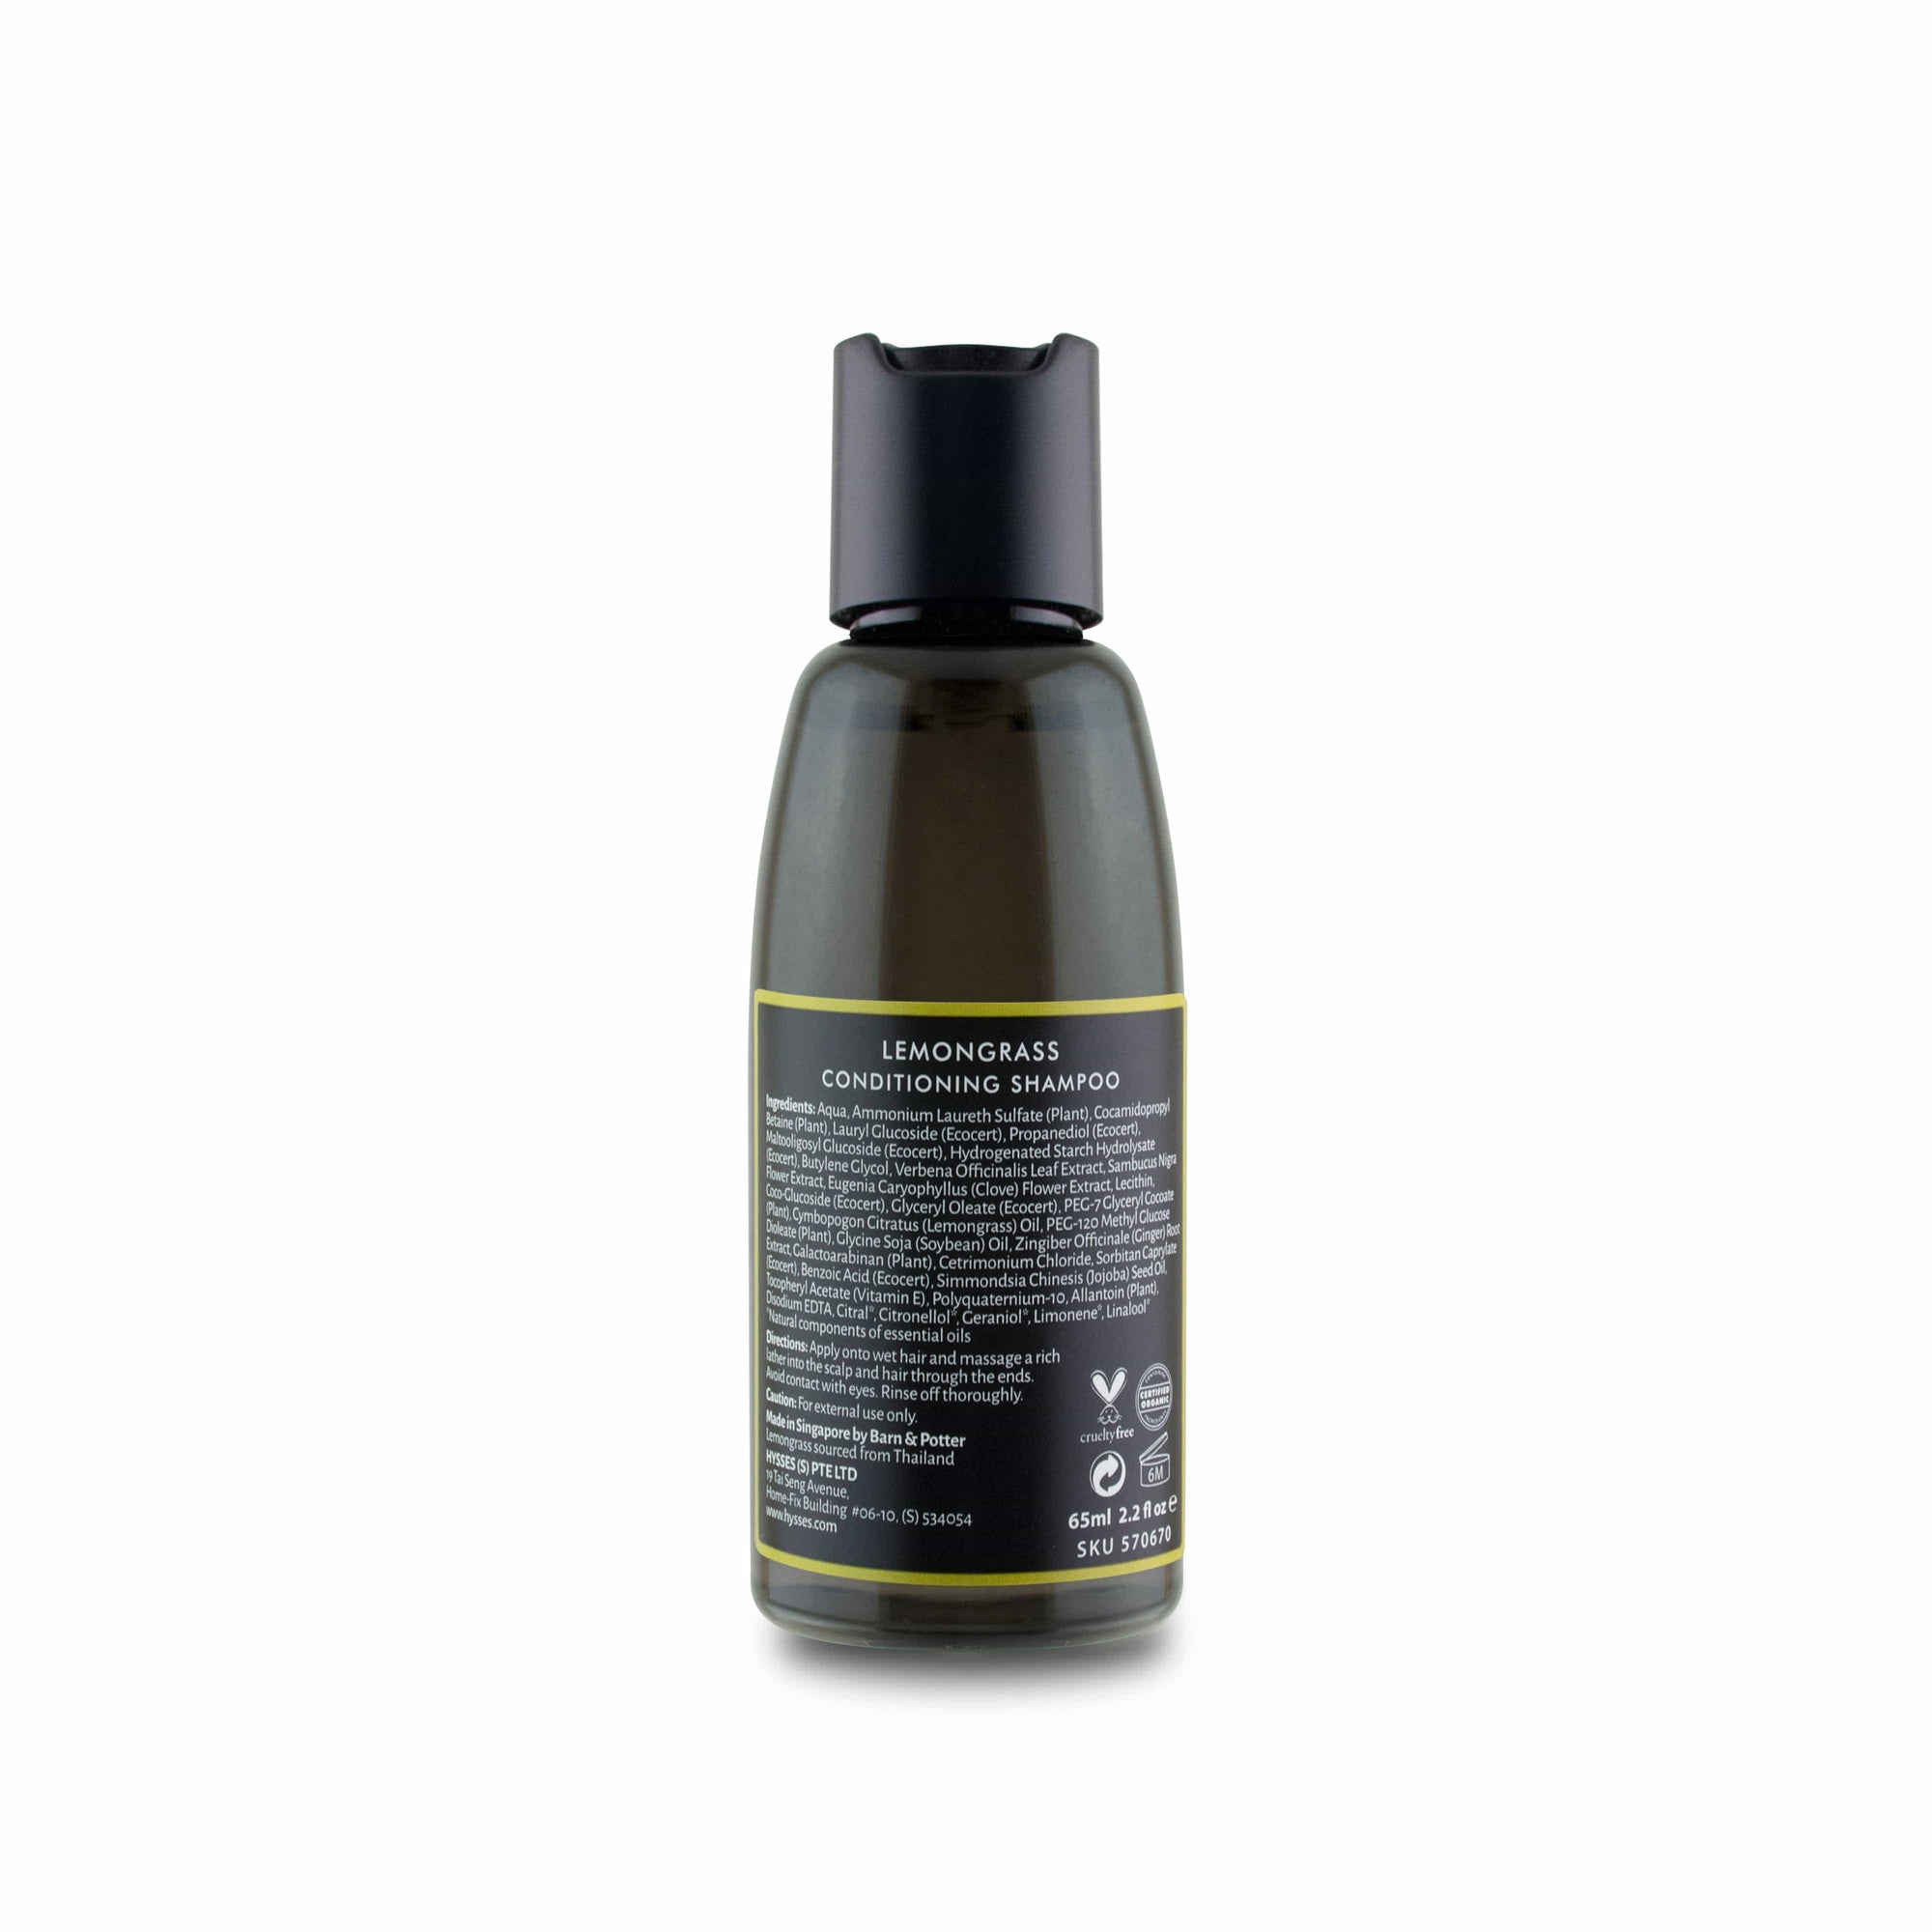 Hysses Hair Care Shampoo Lemongrass, 65ml